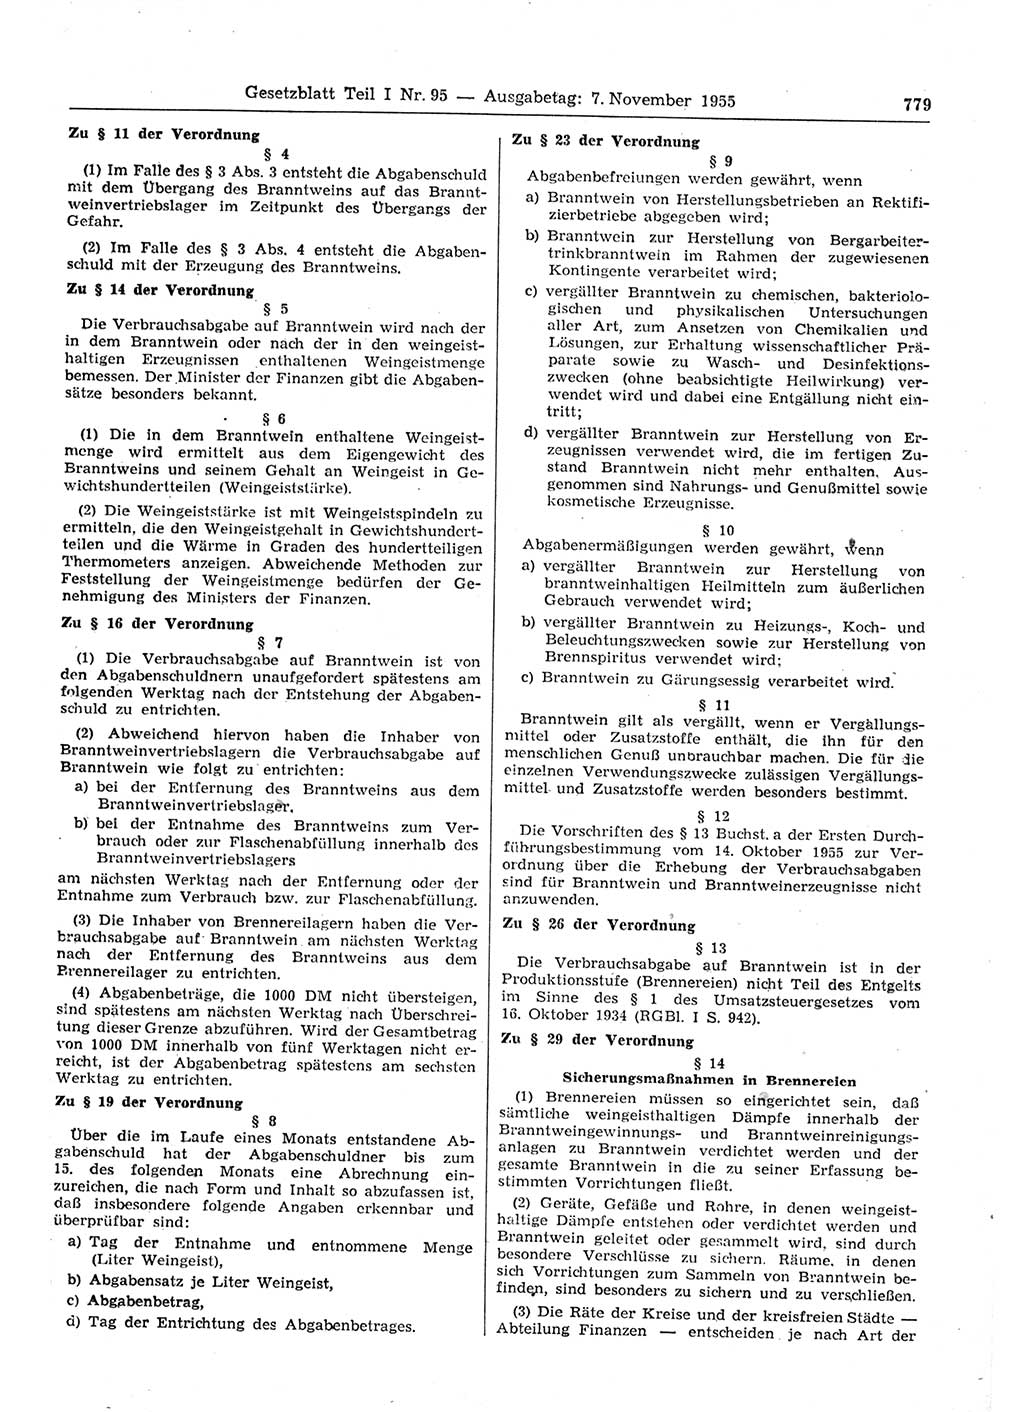 Gesetzblatt (GBl.) der Deutschen Demokratischen Republik (DDR) Teil Ⅰ 1955, Seite 779 (GBl. DDR Ⅰ 1955, S. 779)